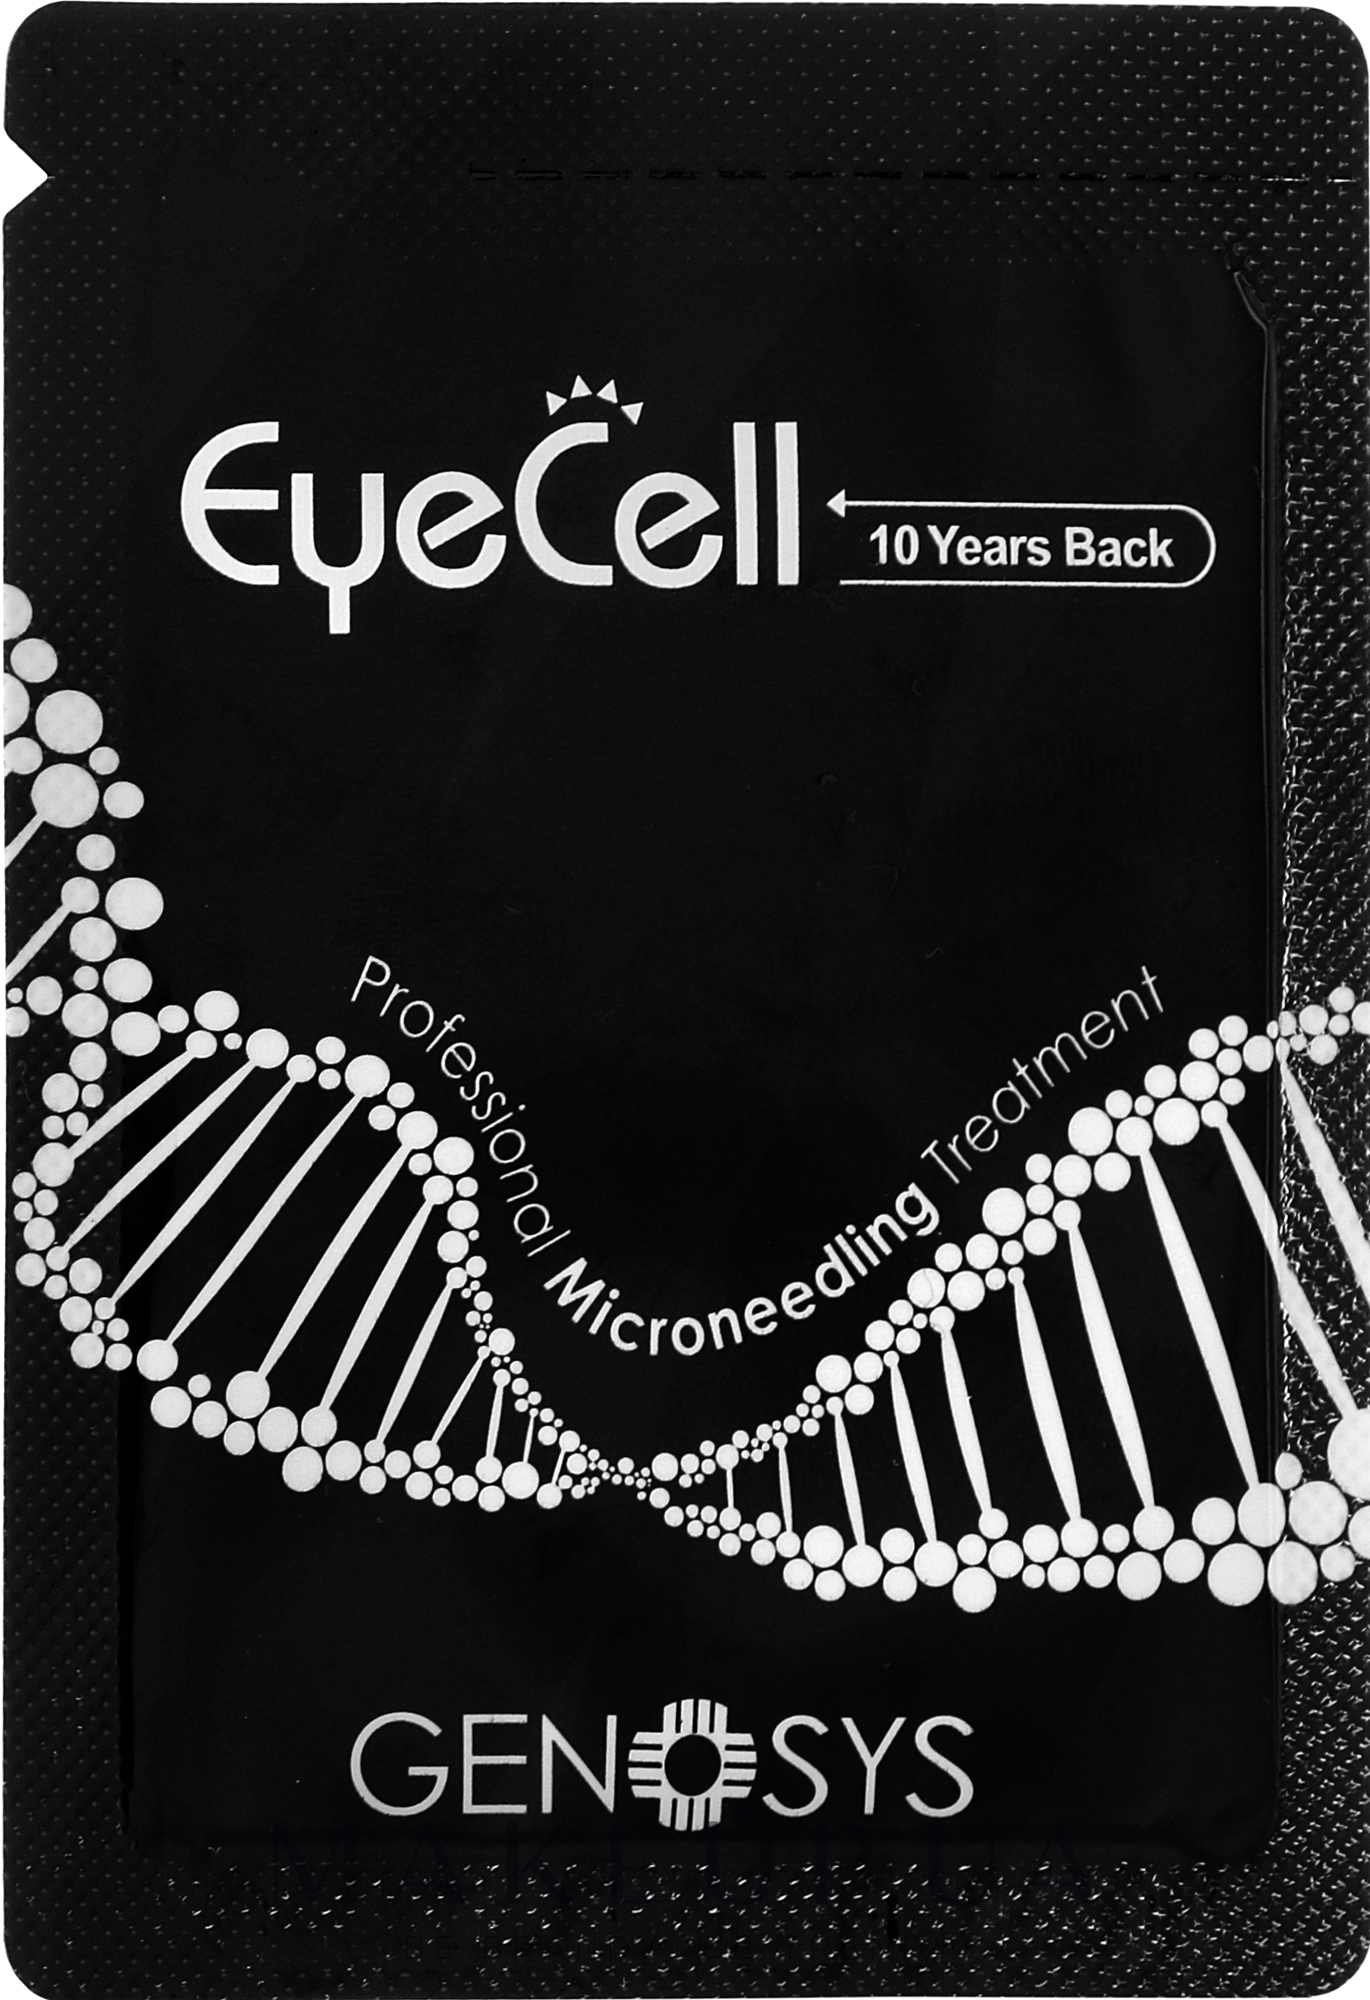 Крем для области глаз с растительными стволовыми клетками - Genosys Eye Cell Contour Cream 10 Years Back (пробник) — фото 2g